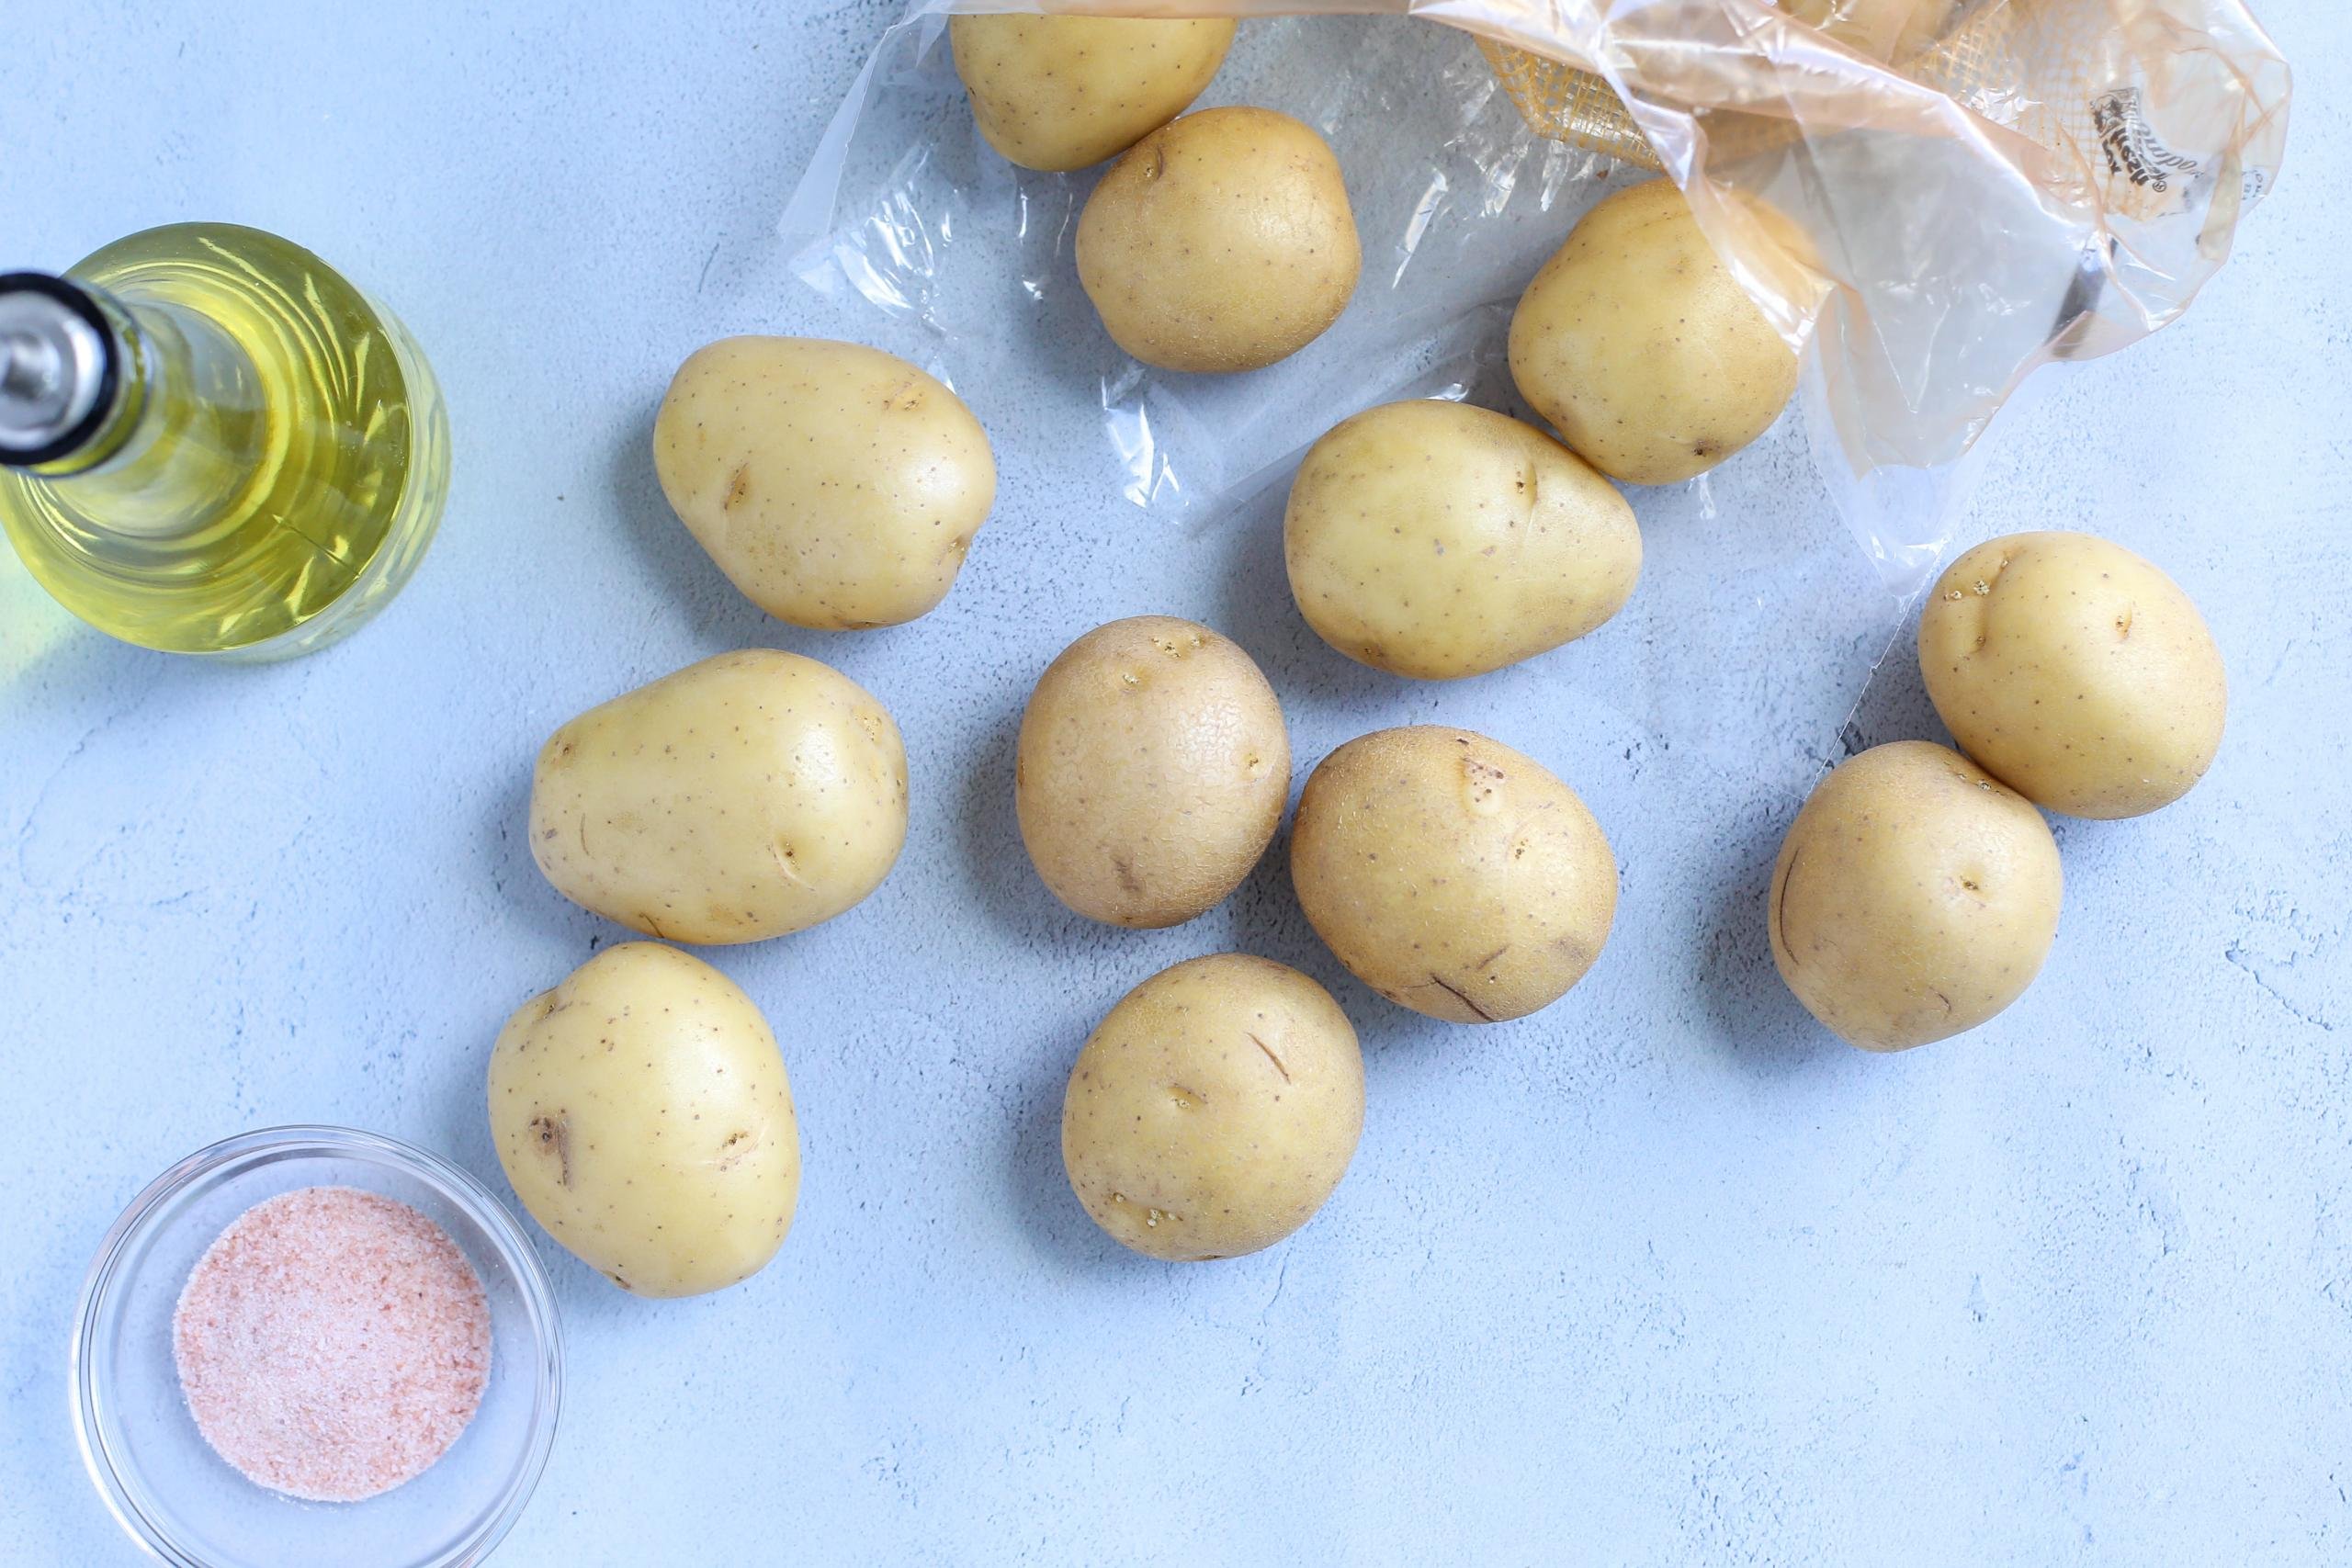 New Potatoes with Bacon & Herbs (aka Baby Potatoes) - Momsdish